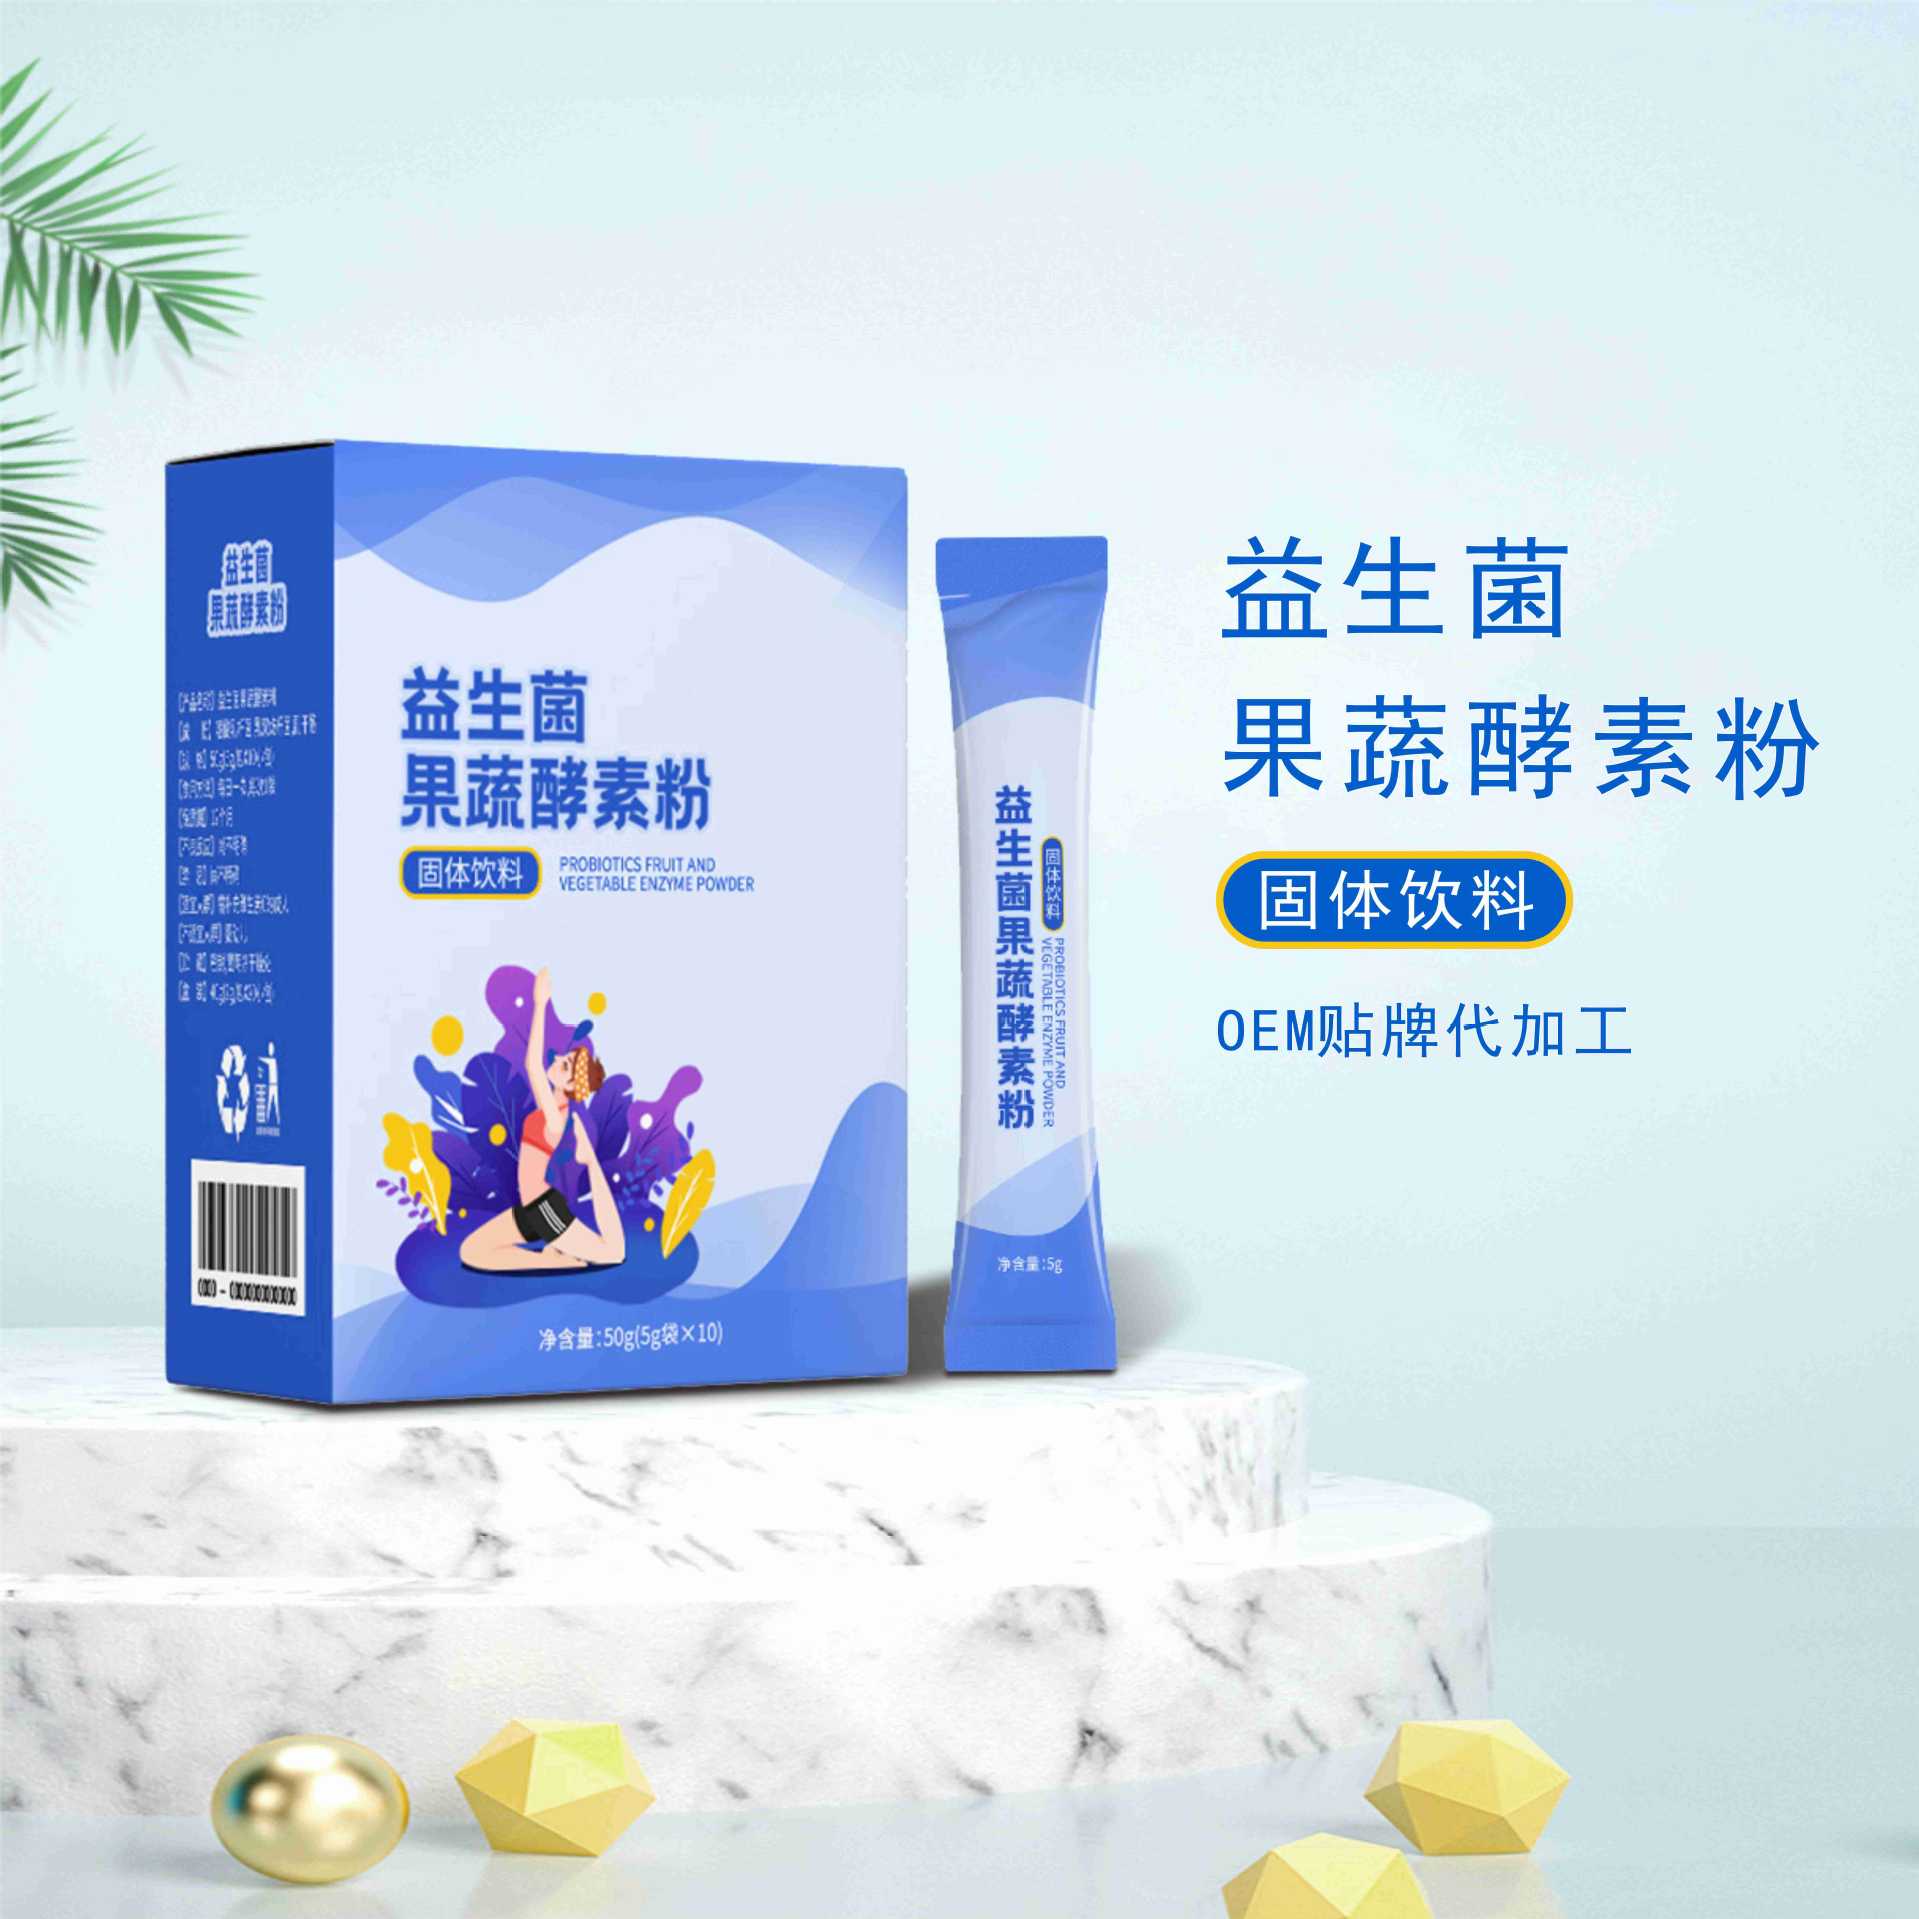 限量抢购批发 LIMIT RUSH BUYING 100% original Taiwan fruit slimming enzyme powder slimming, whitening ...